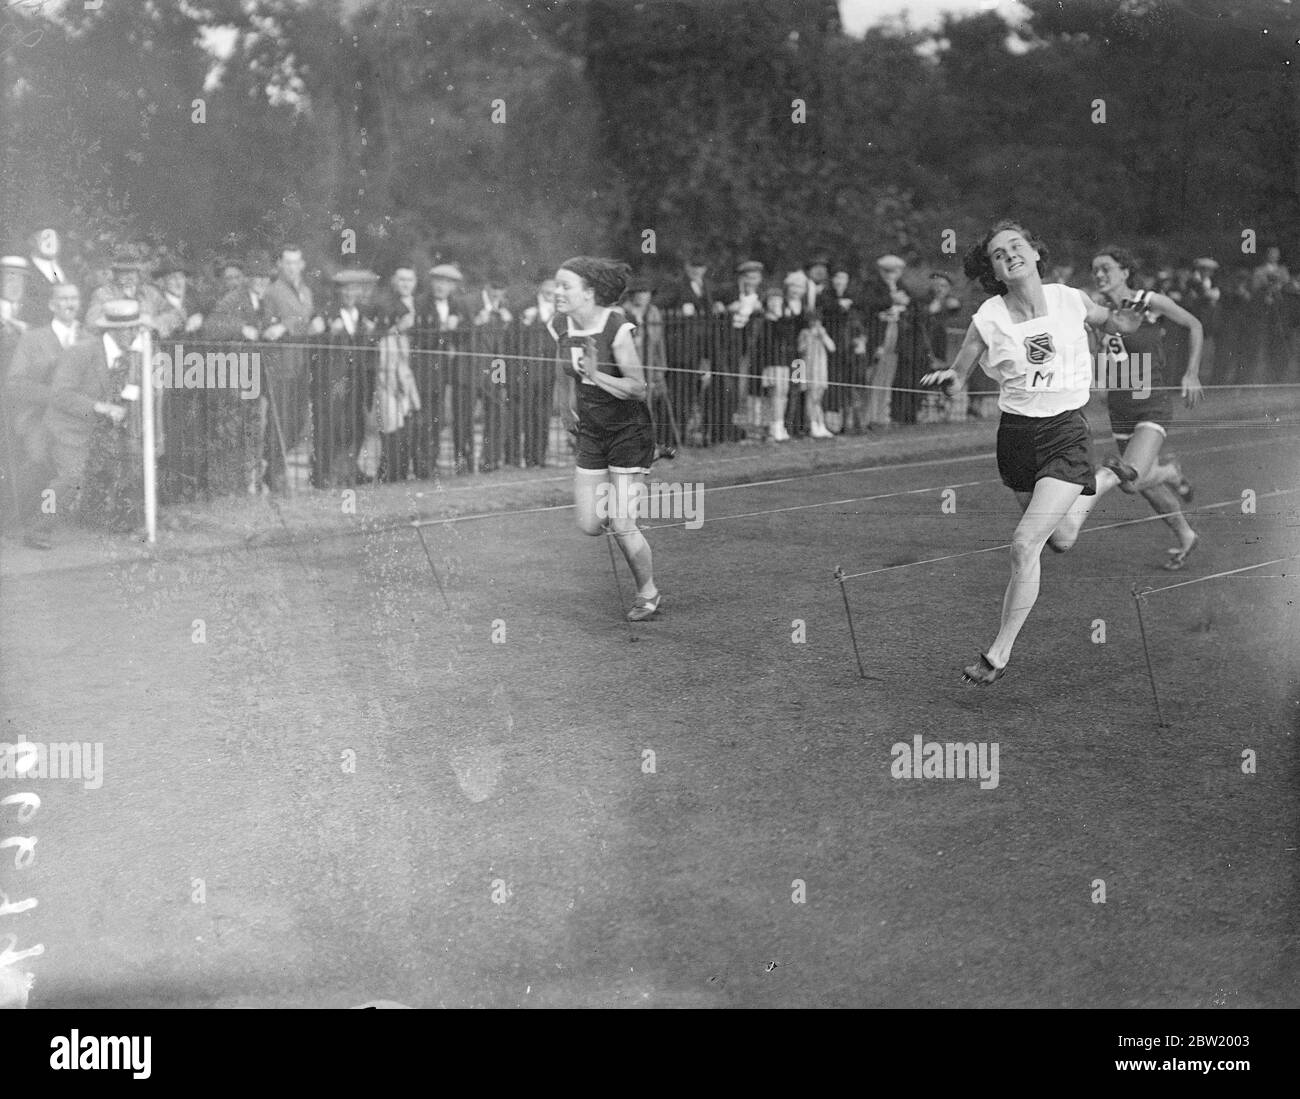 Surrey County Women's Amateur Athletic Association ha incontrato la Middlesex County Women's Athletic Association in un incontro intercontea a Battersea Park, Londra. Miss D. Cook (Middlesex) vince la gara di 100 yards in questo spettacolare stile di Miss B. Burke (Surrey), campione sudafricano. 20 luglio 1937 Foto Stock